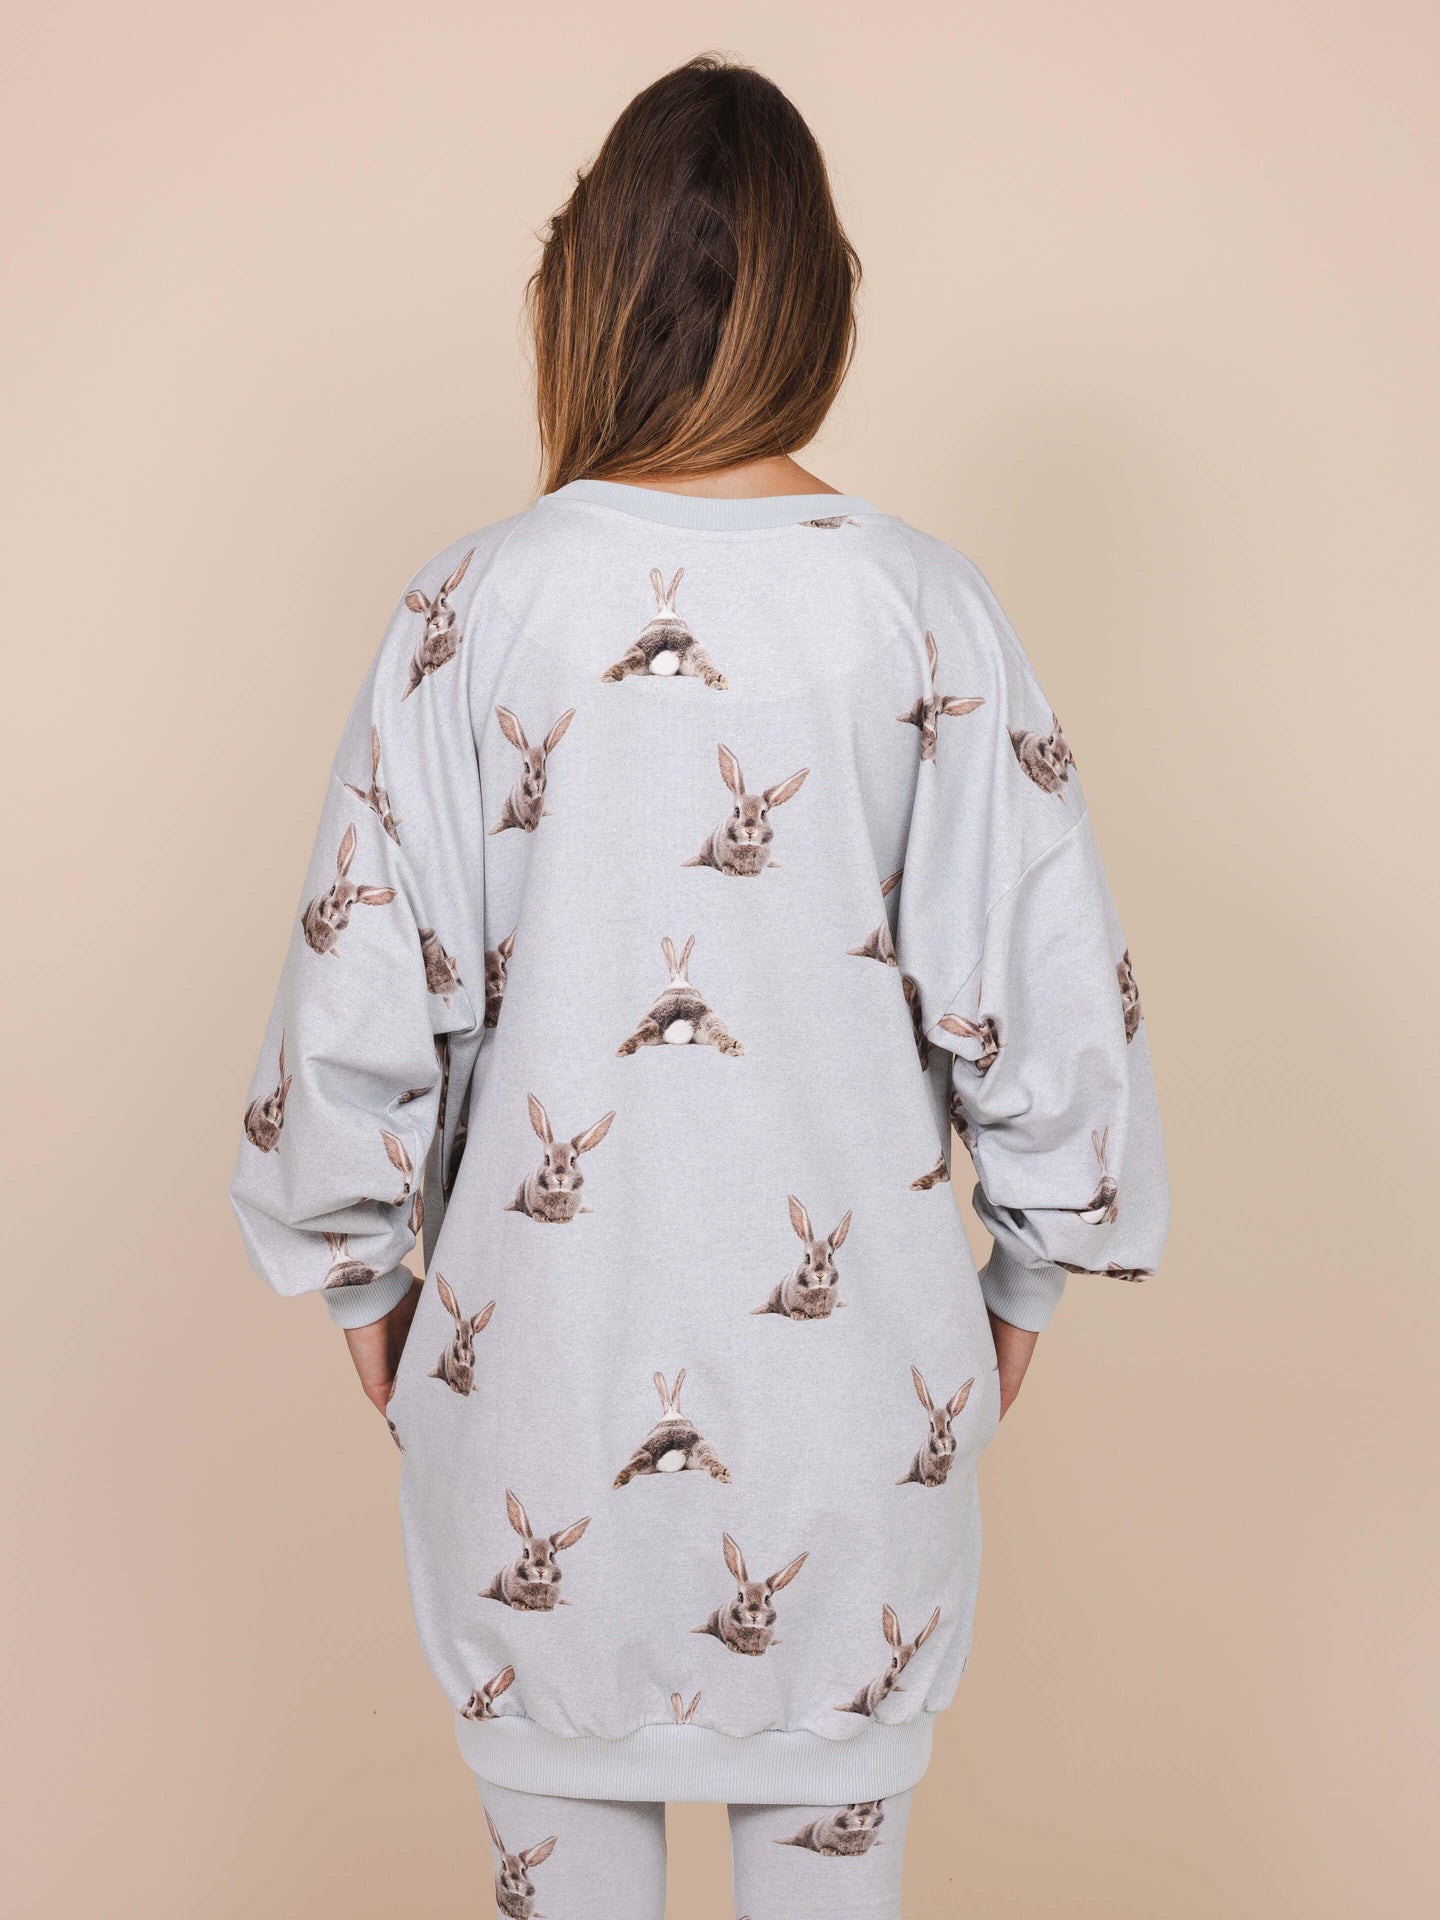 Bunny Bums Sweater Dress - SNURK